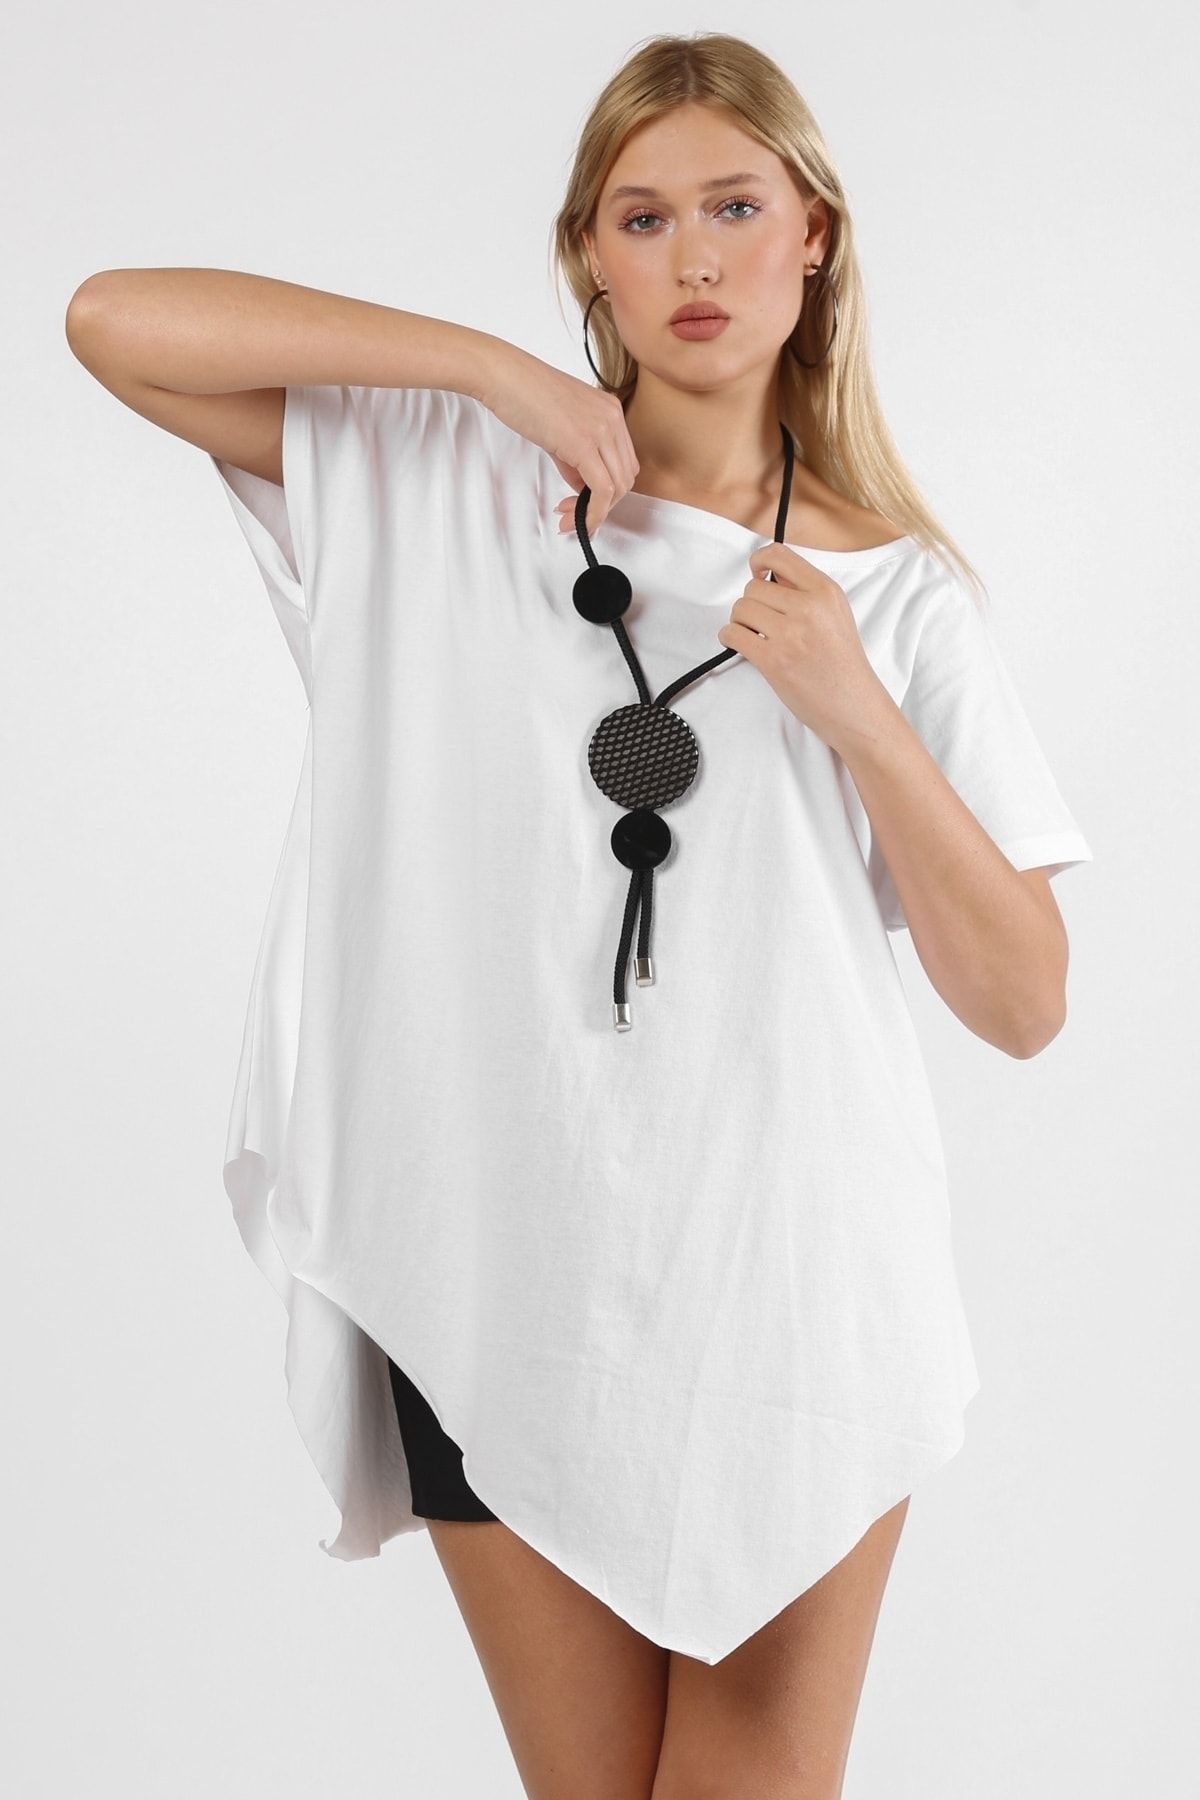 Chiccy Beyaz Yuvarlak Yaka Düşük Kol Asimetrik Örme T-shirt